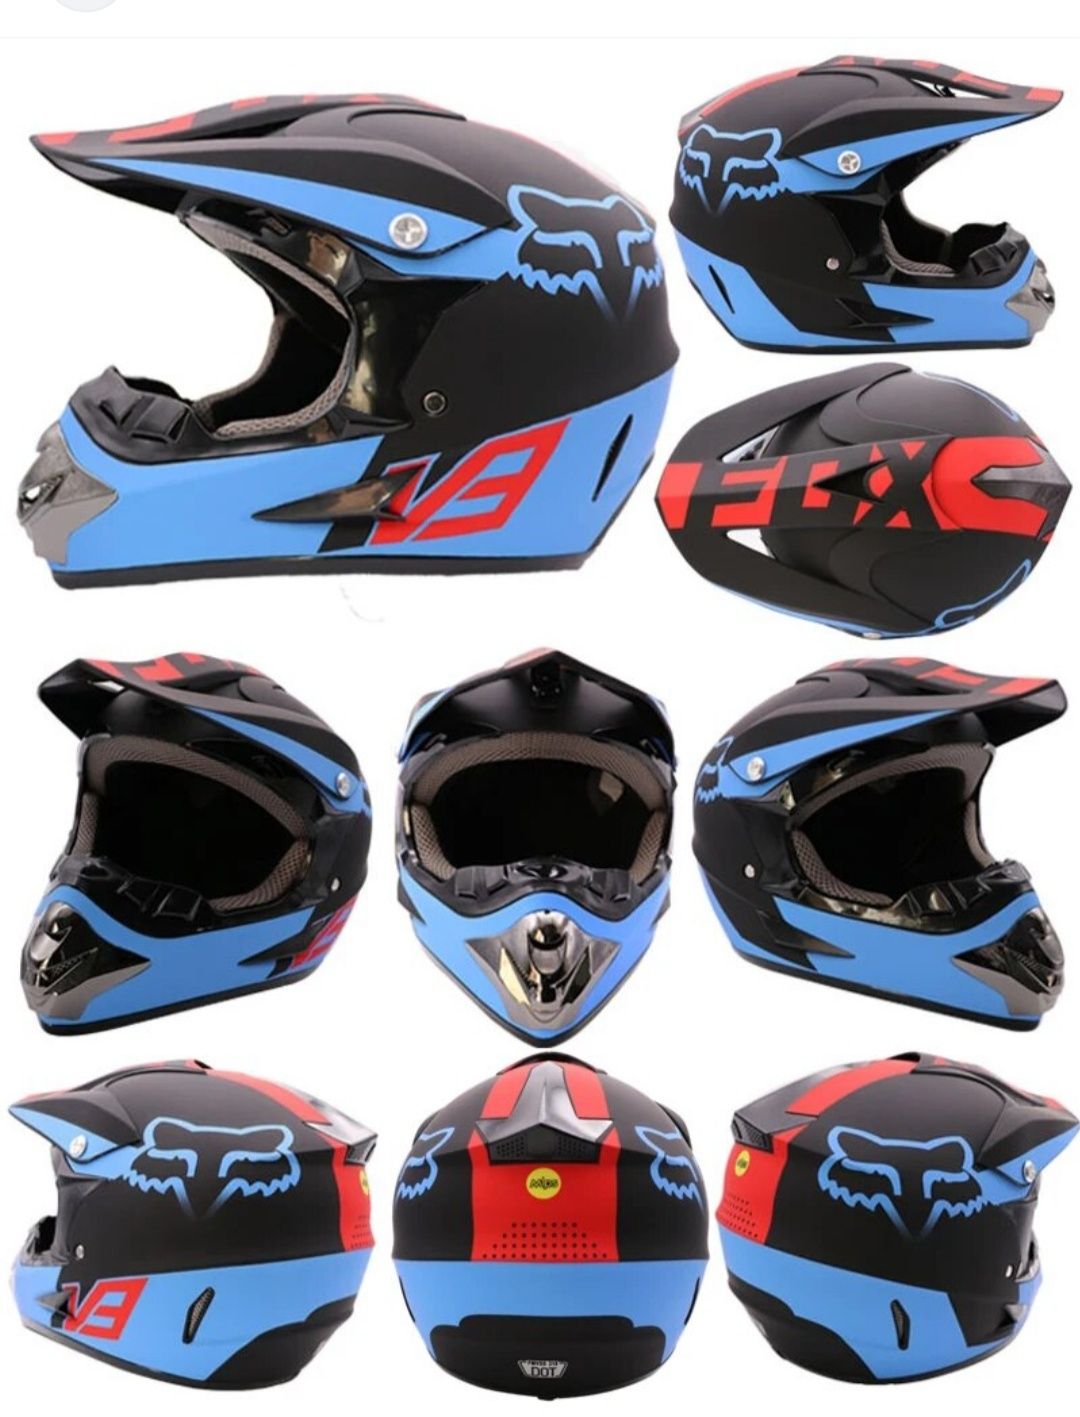 Мото шлем Fox racing/мото шлем/эндуро шлем + очки